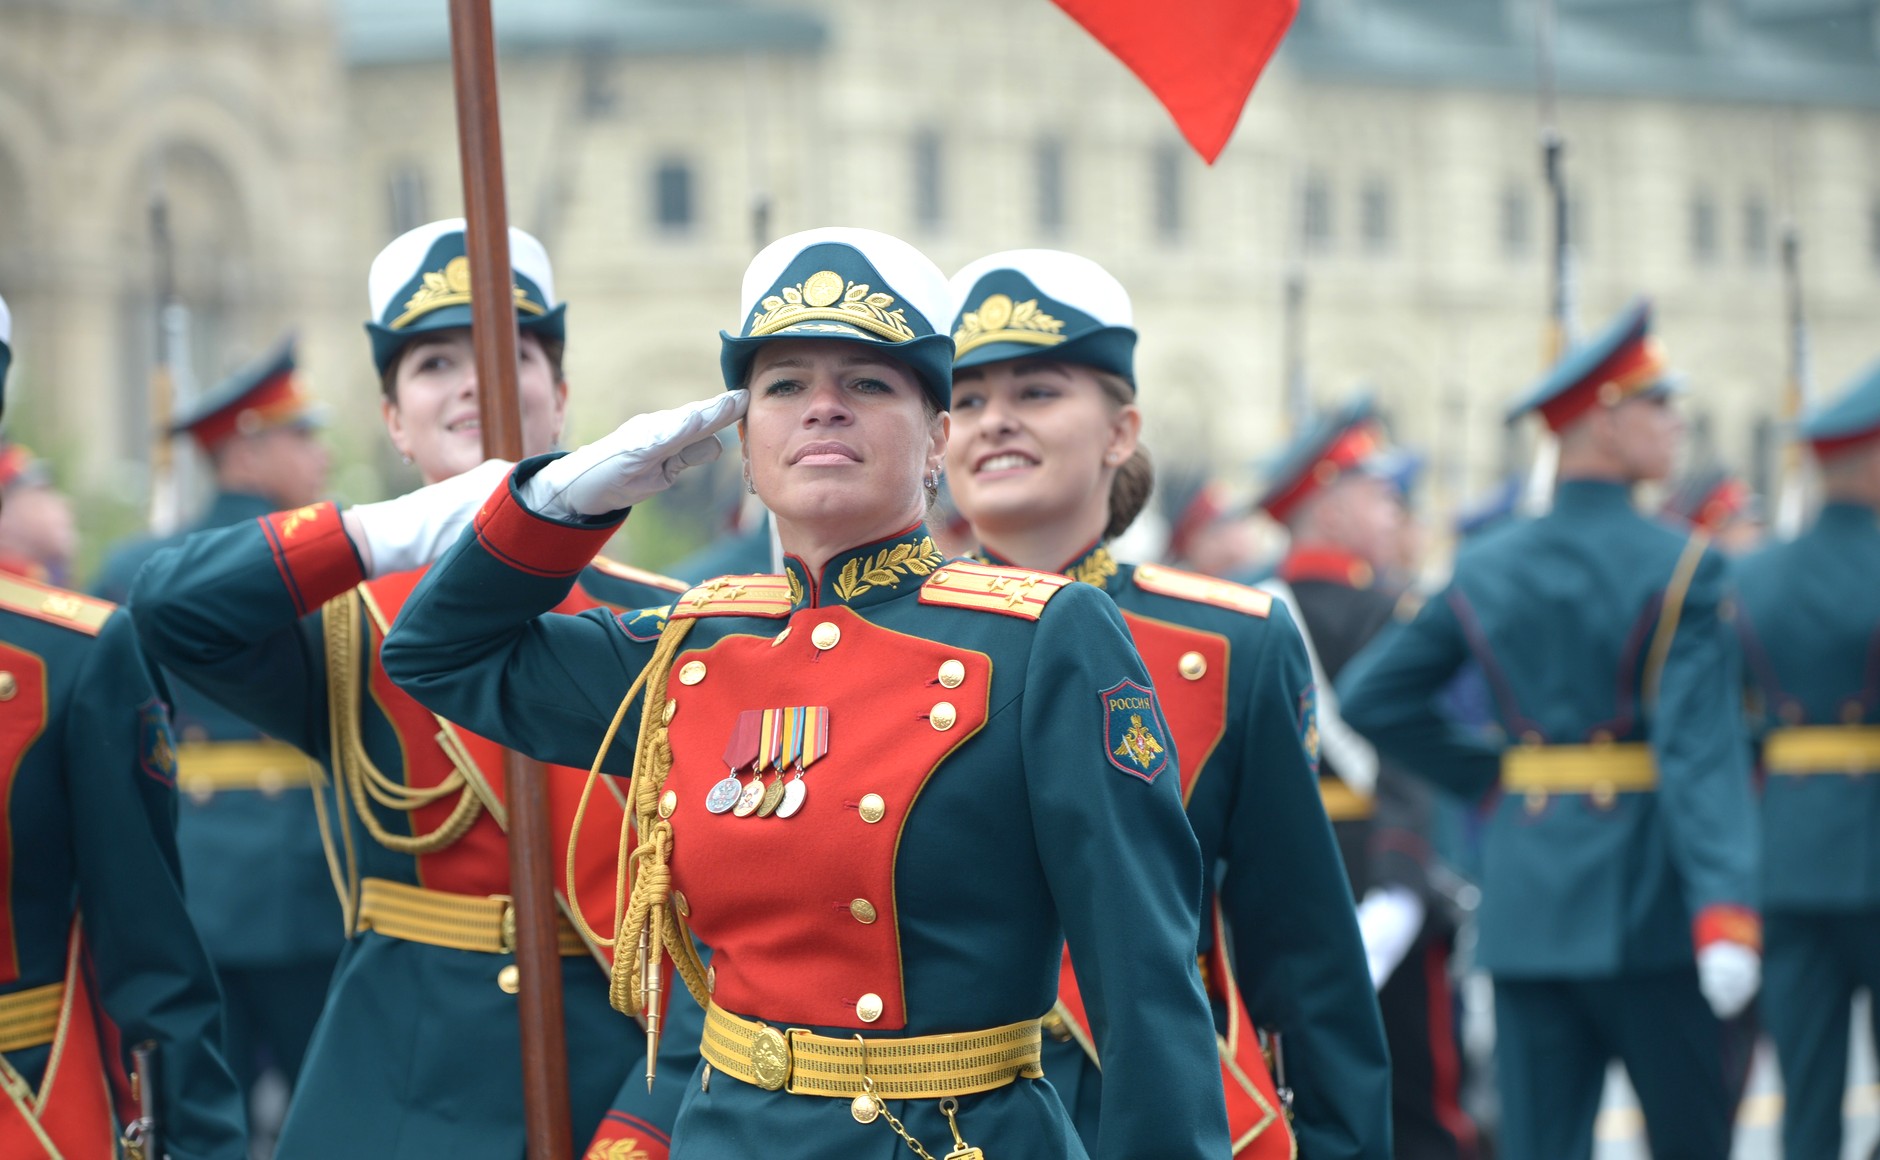 serbian army women